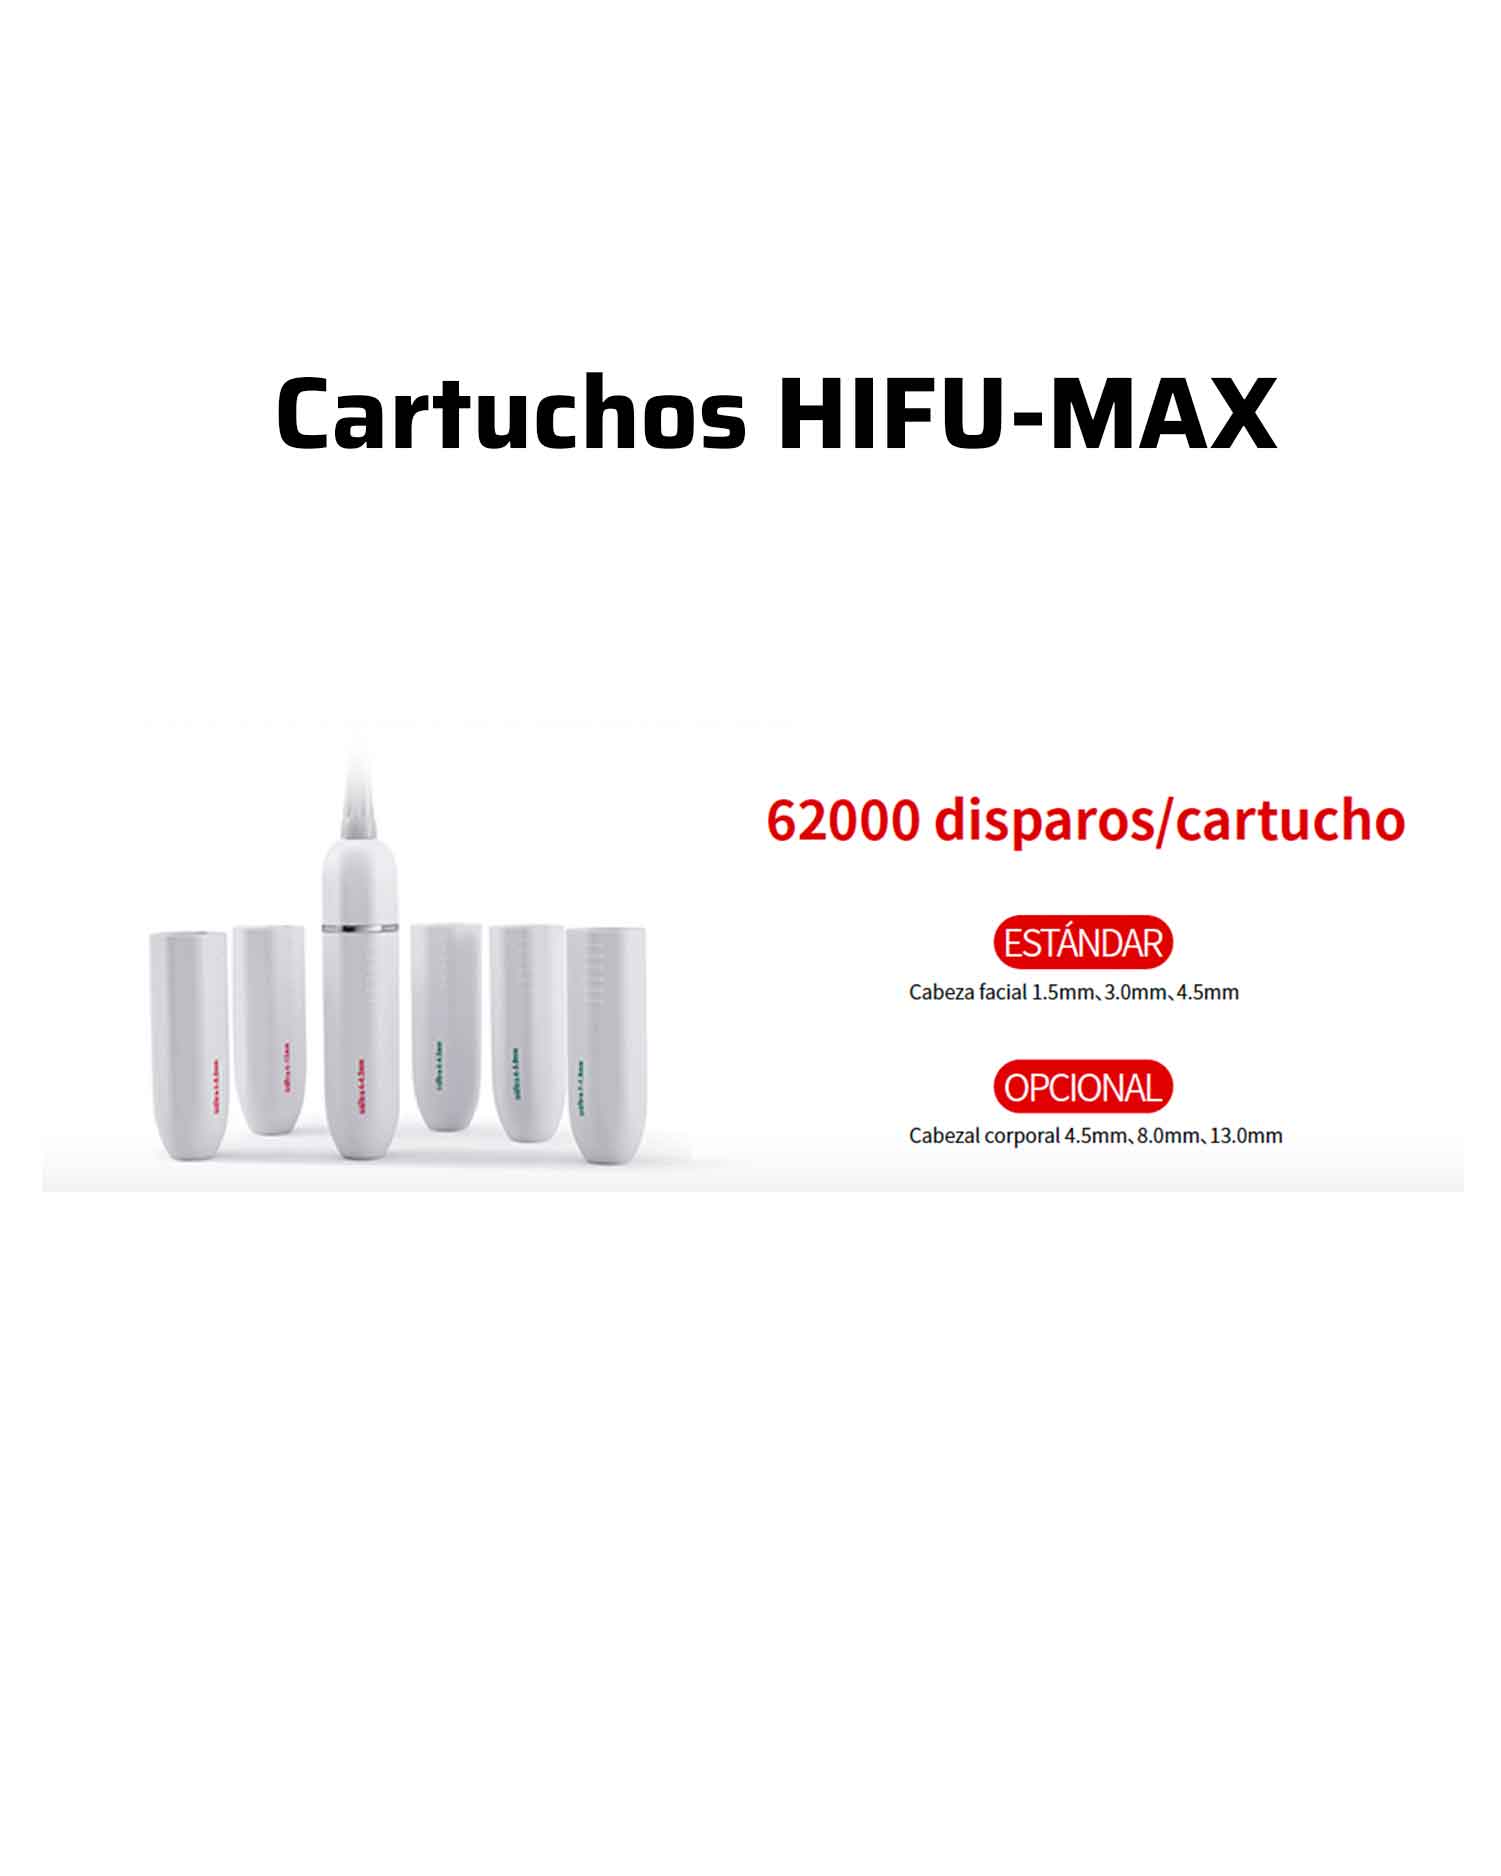 HIFU-MAX 4D facial, body and vaginal - 6 in 1